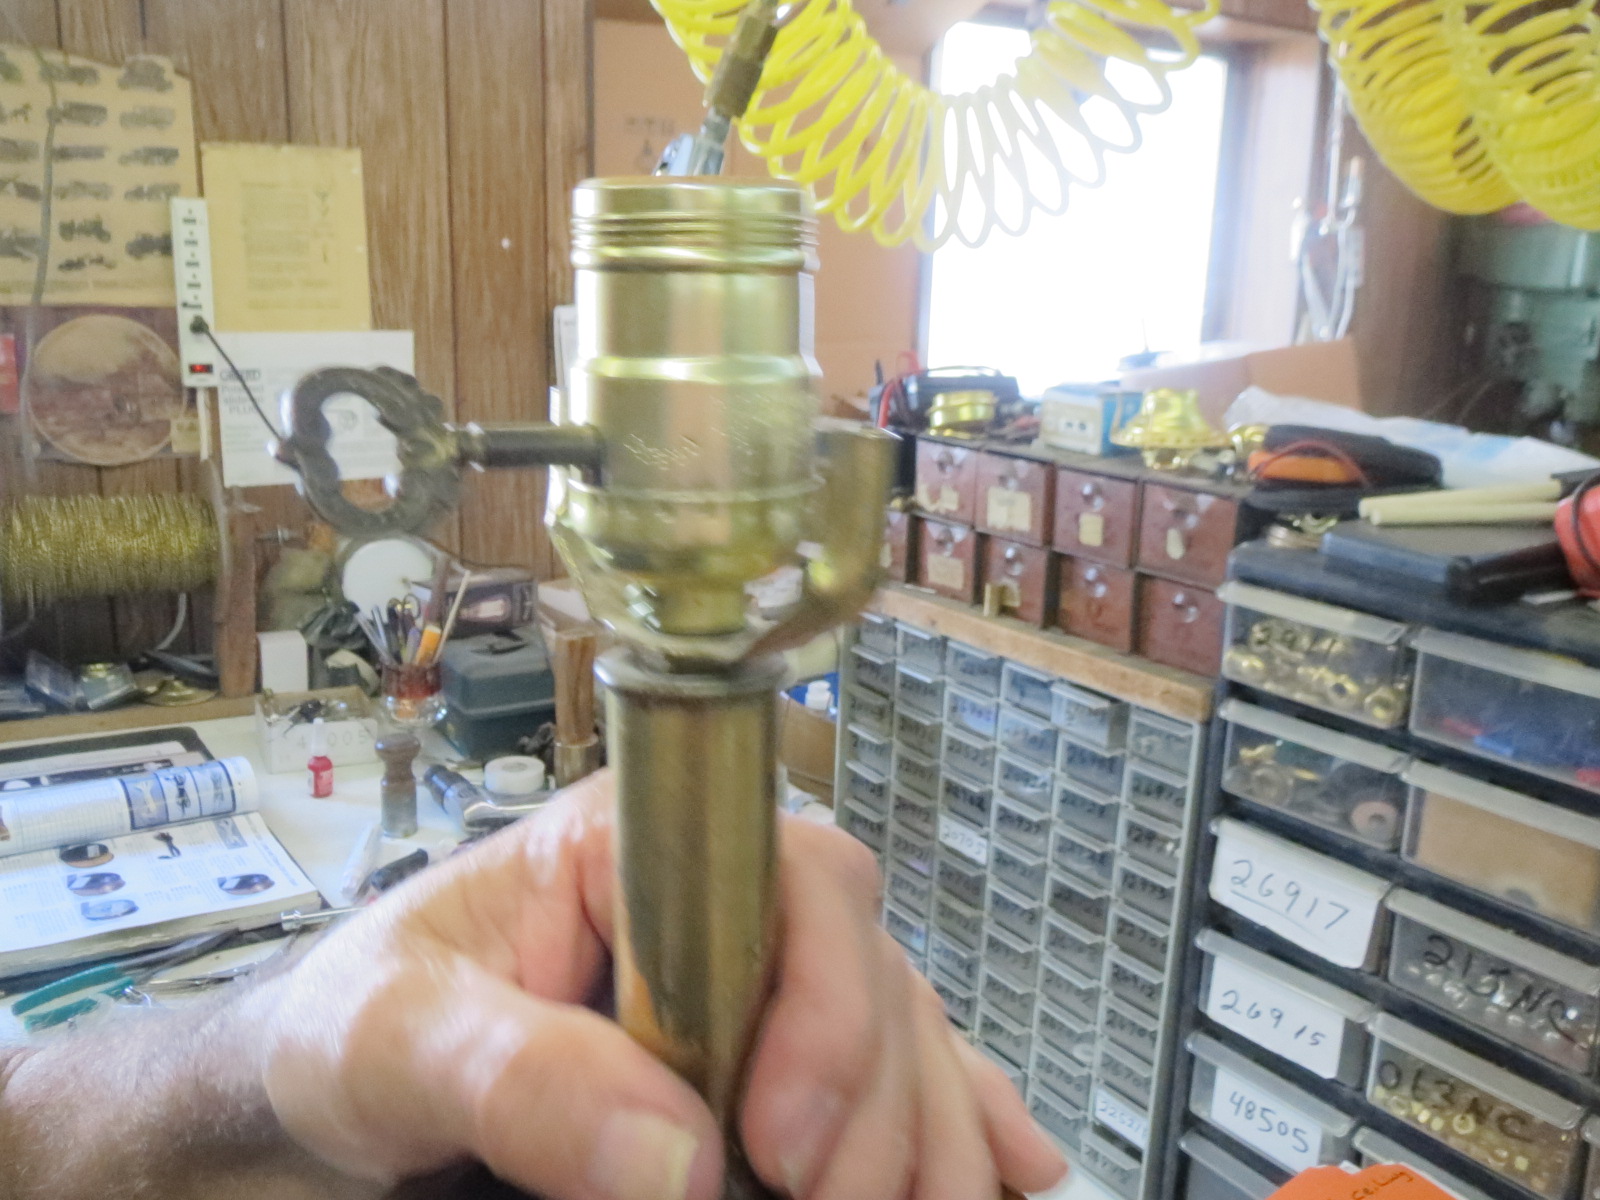 Lamp Parts and Repair | Lamp Doctor: Table Lamp Repair - Replace a Lamp